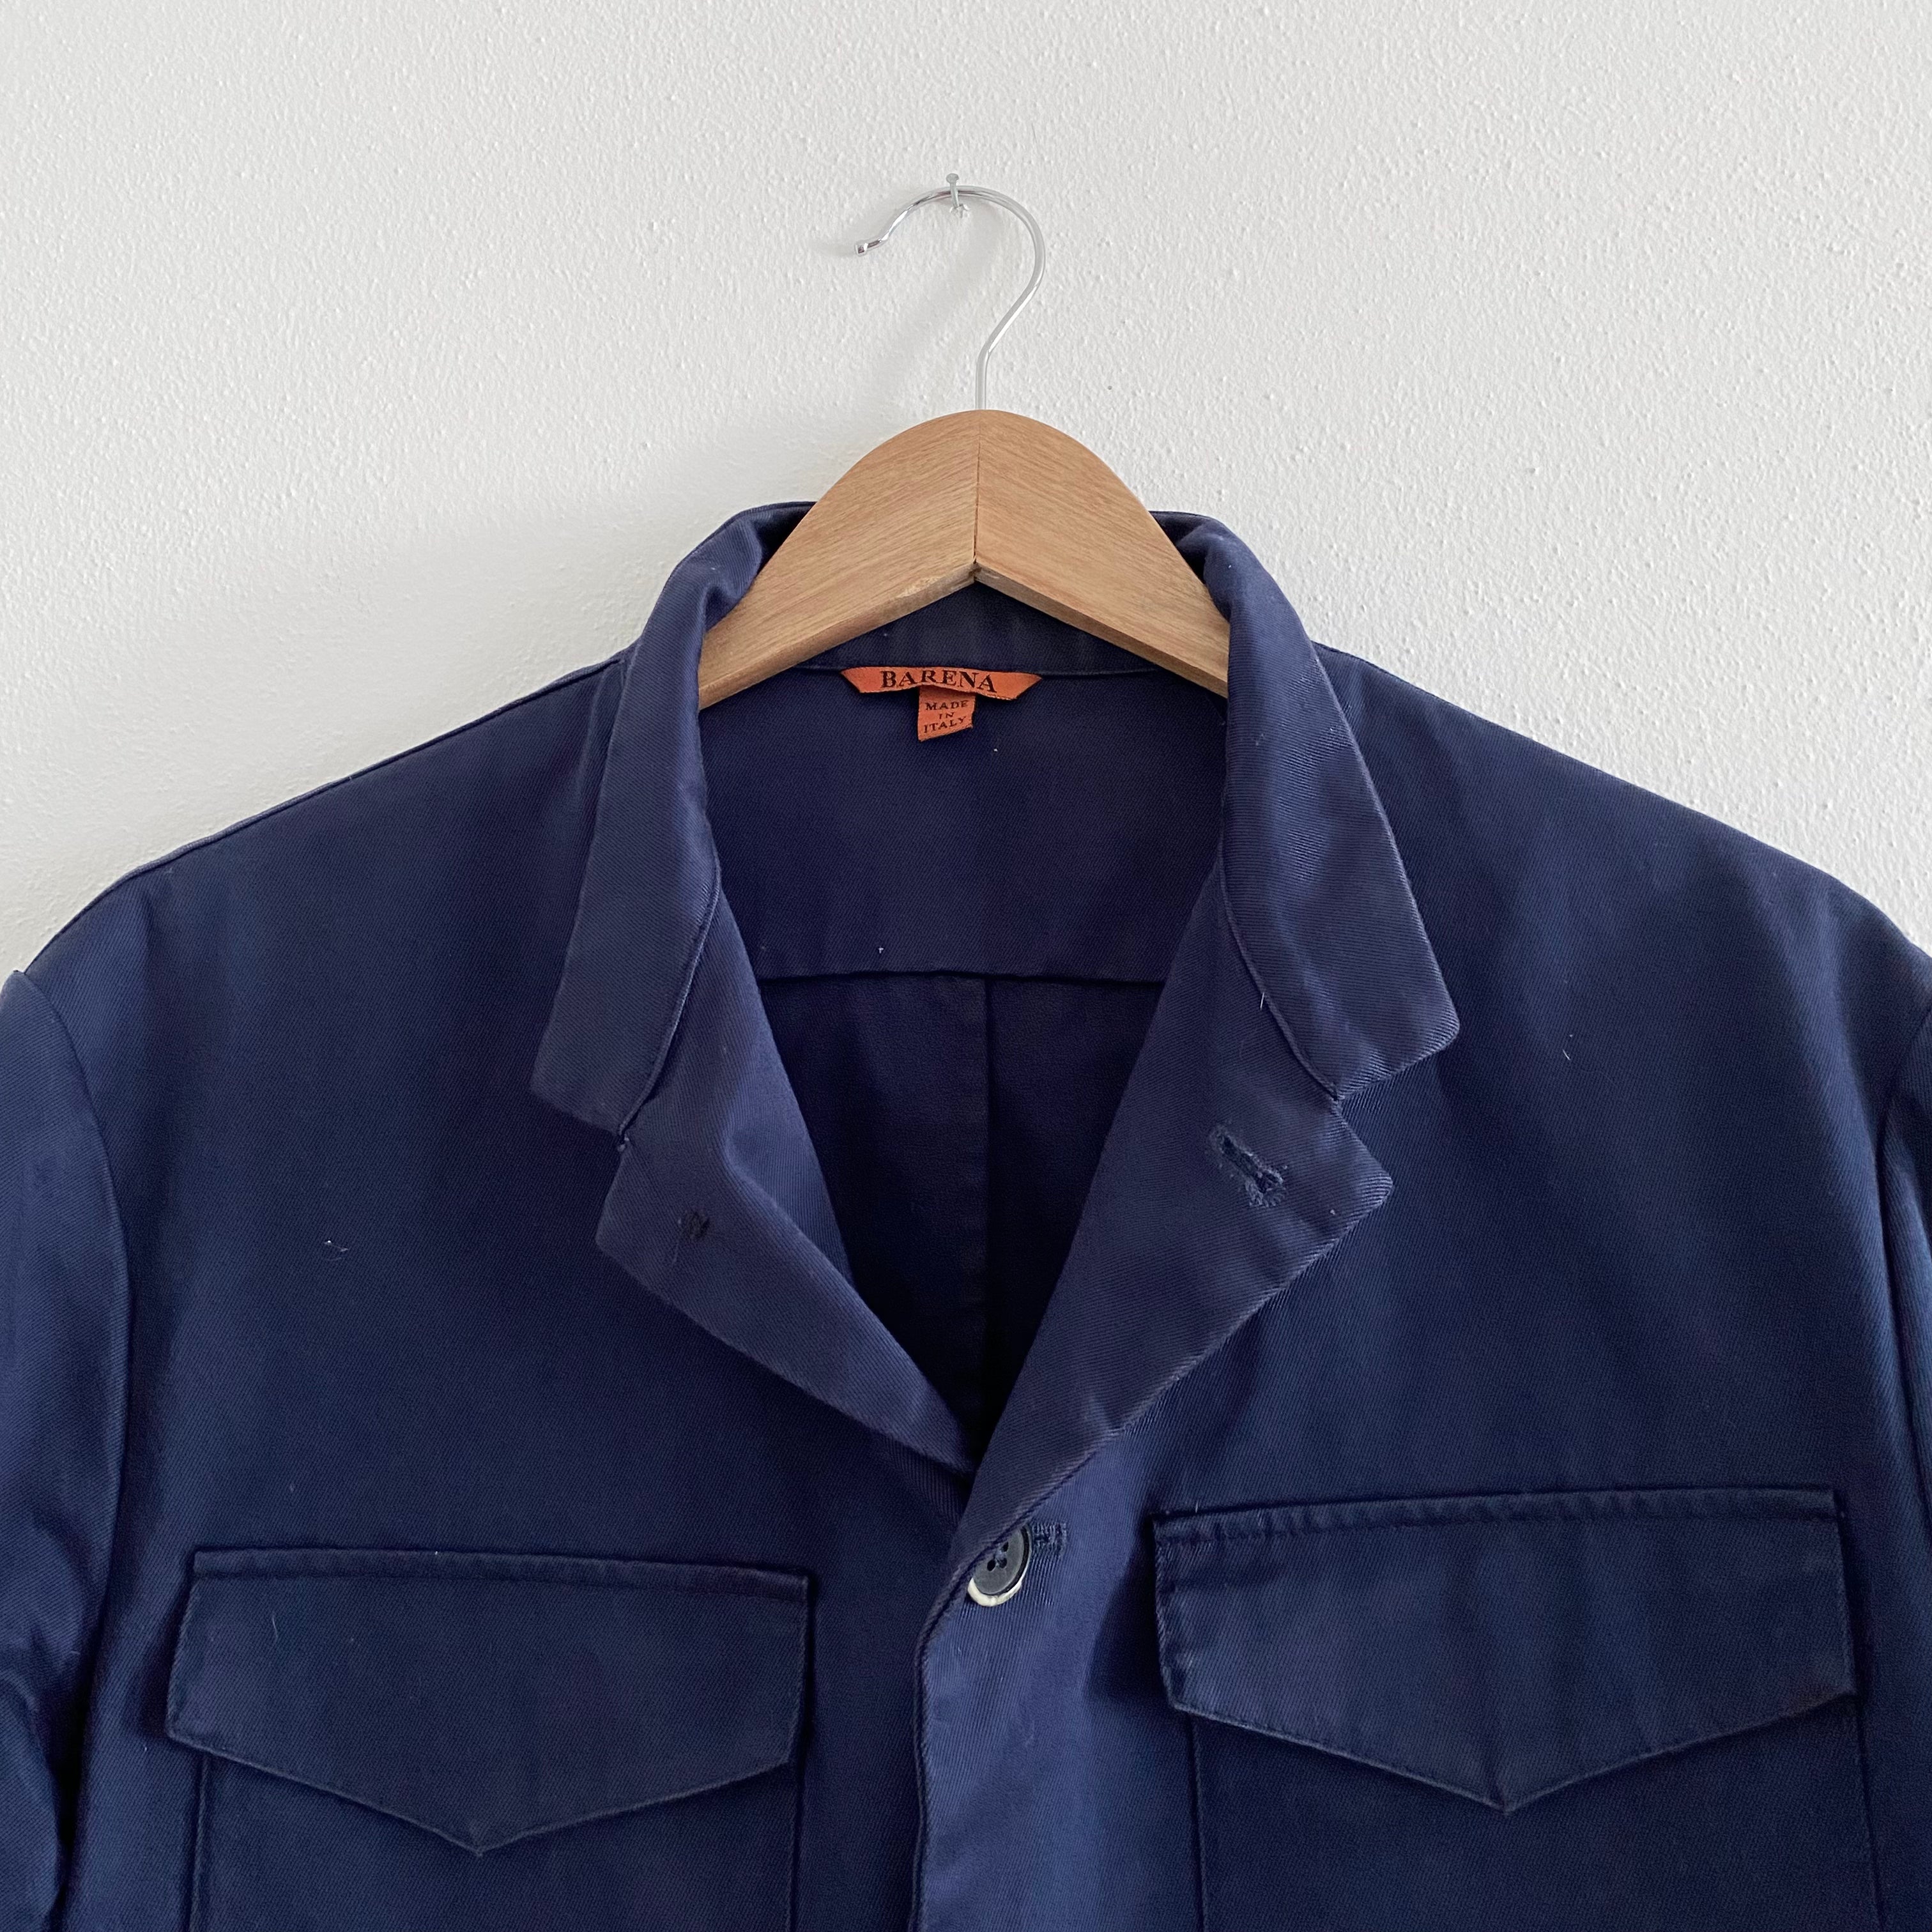 Workwear Overshirt/Jacket - EU 50/M